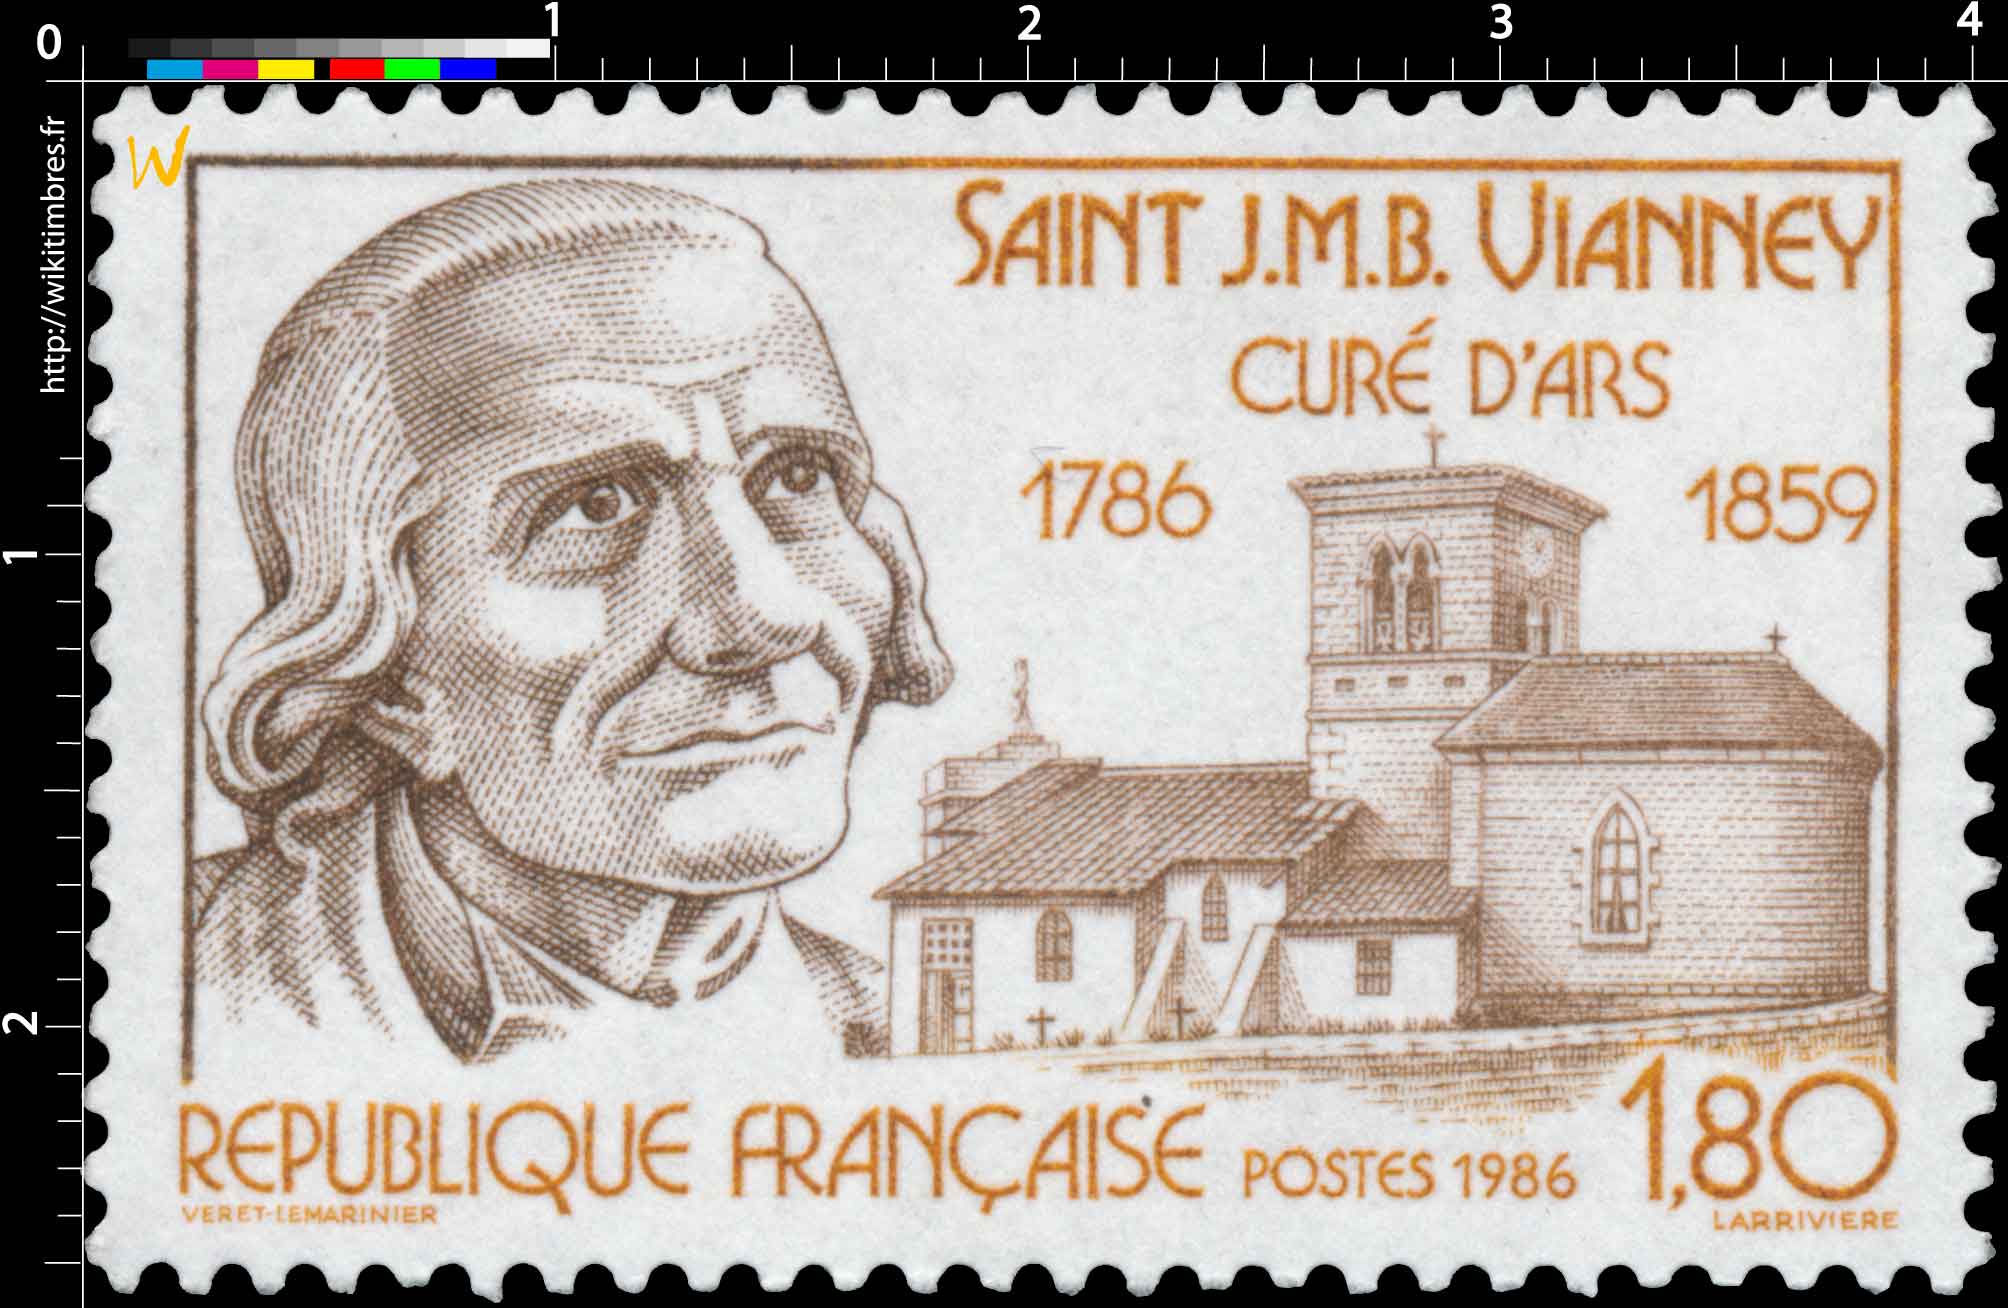 1986 SAINT J.M.B. VIANNEY CURÉ D'ARS 1786-1859